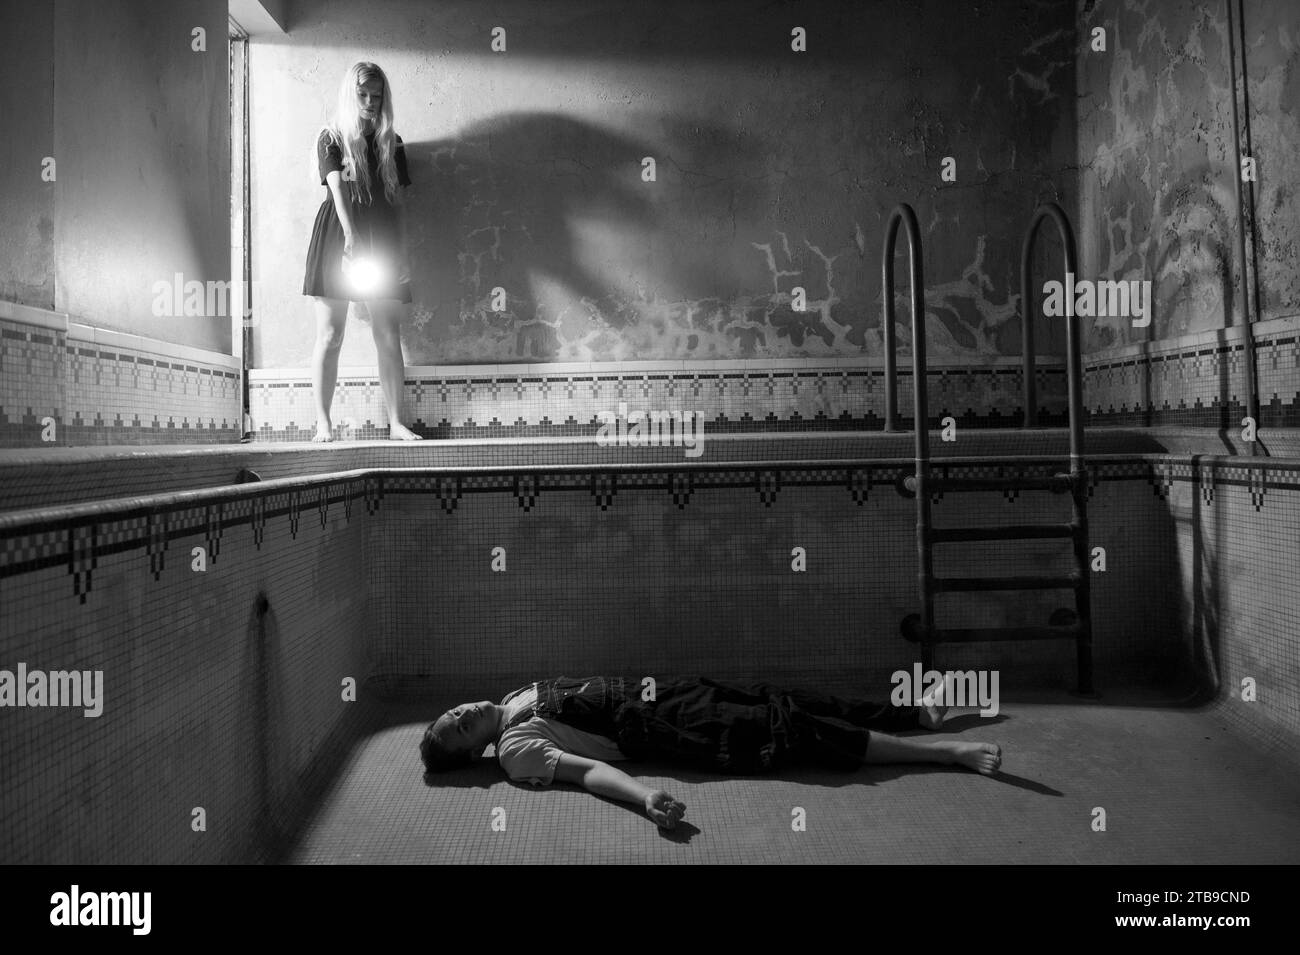 Un jeune homme semble être mort dans une piscine vide alors qu'une jeune femme regarde ; Lincoln, Nebraska, États-Unis d'Amérique Banque D'Images